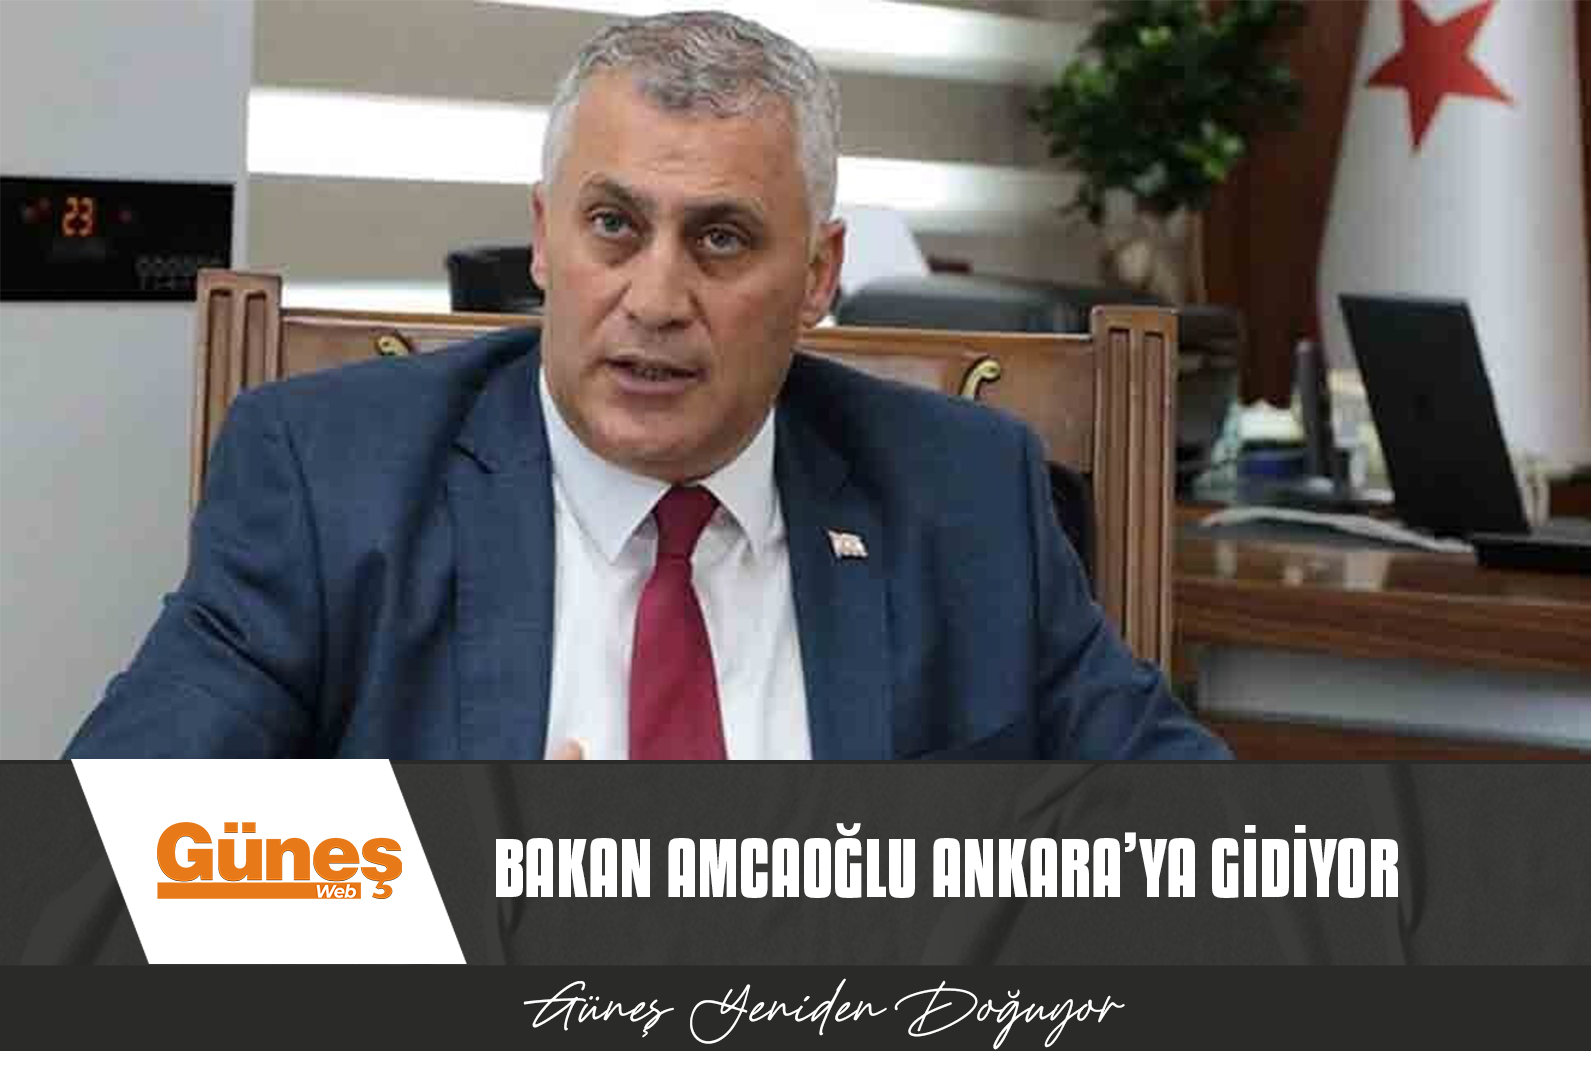 Bakan Amcaoğlu Ankara’ya gidiyor